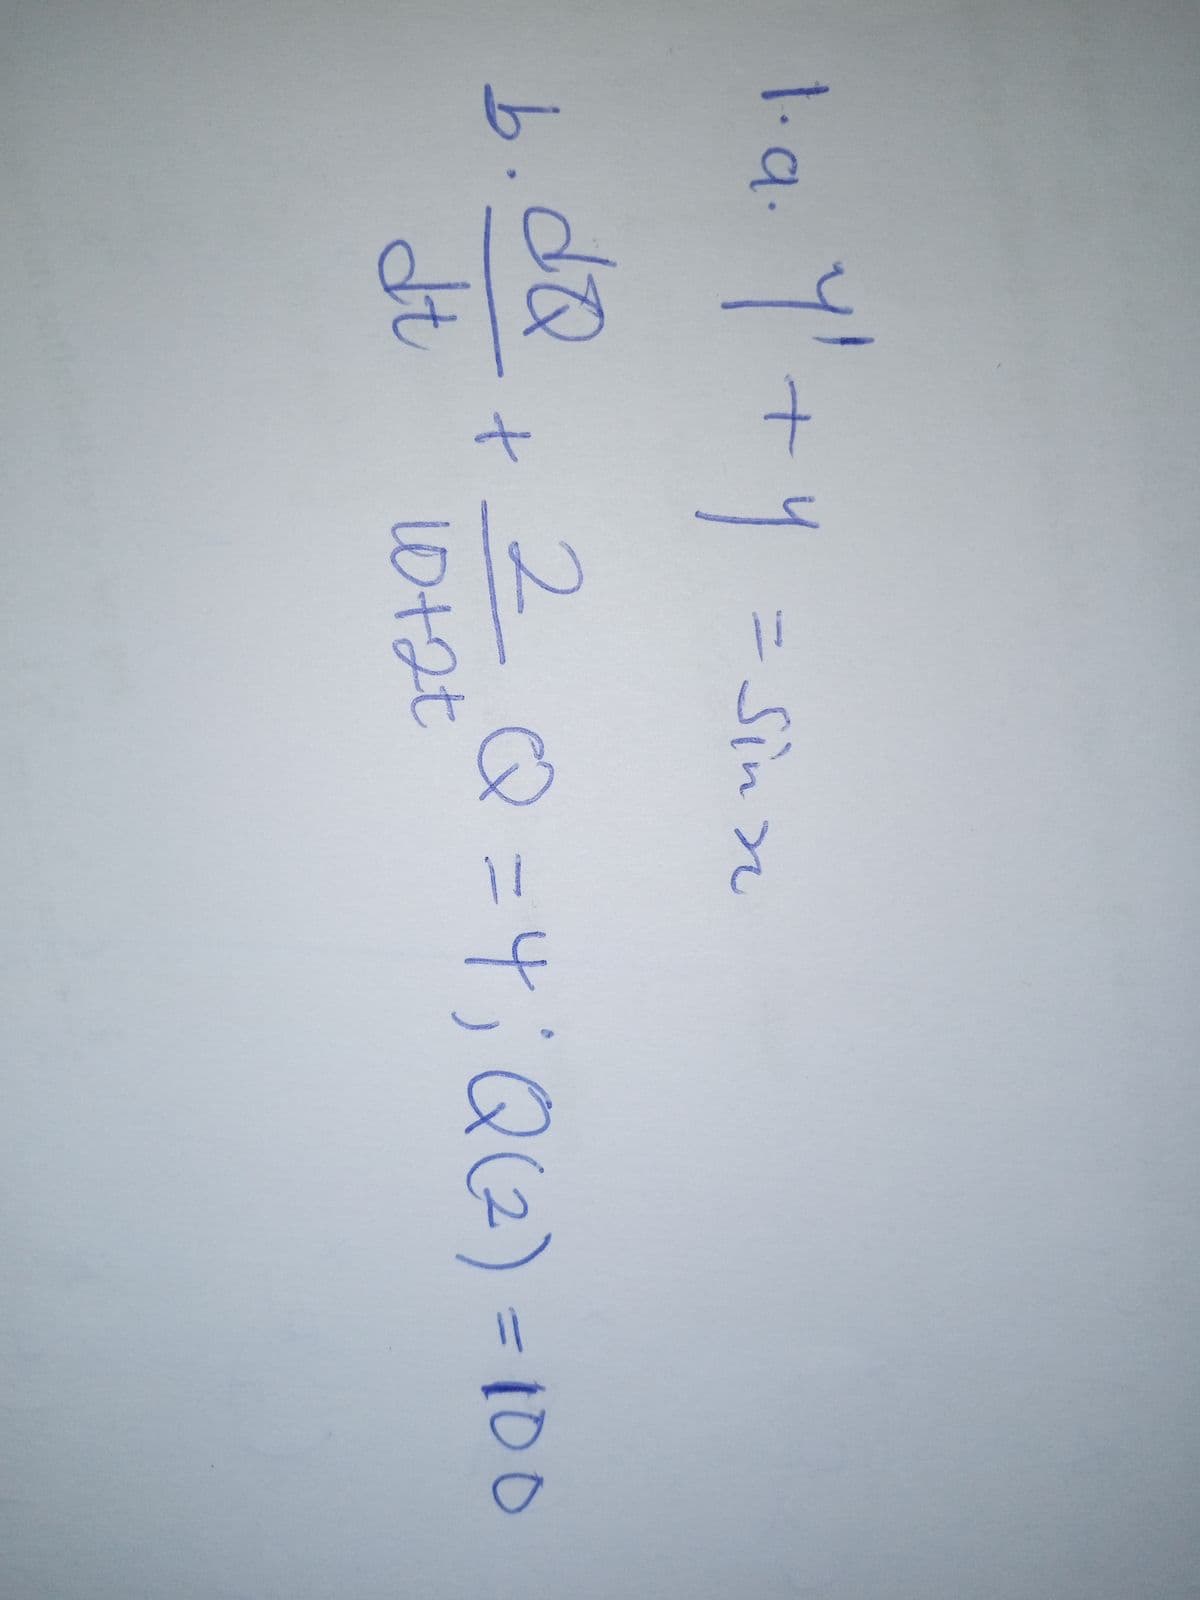 1.a.
二 Sin
b.2Q
2Q=4;Q2)=100
dt
10+2t
